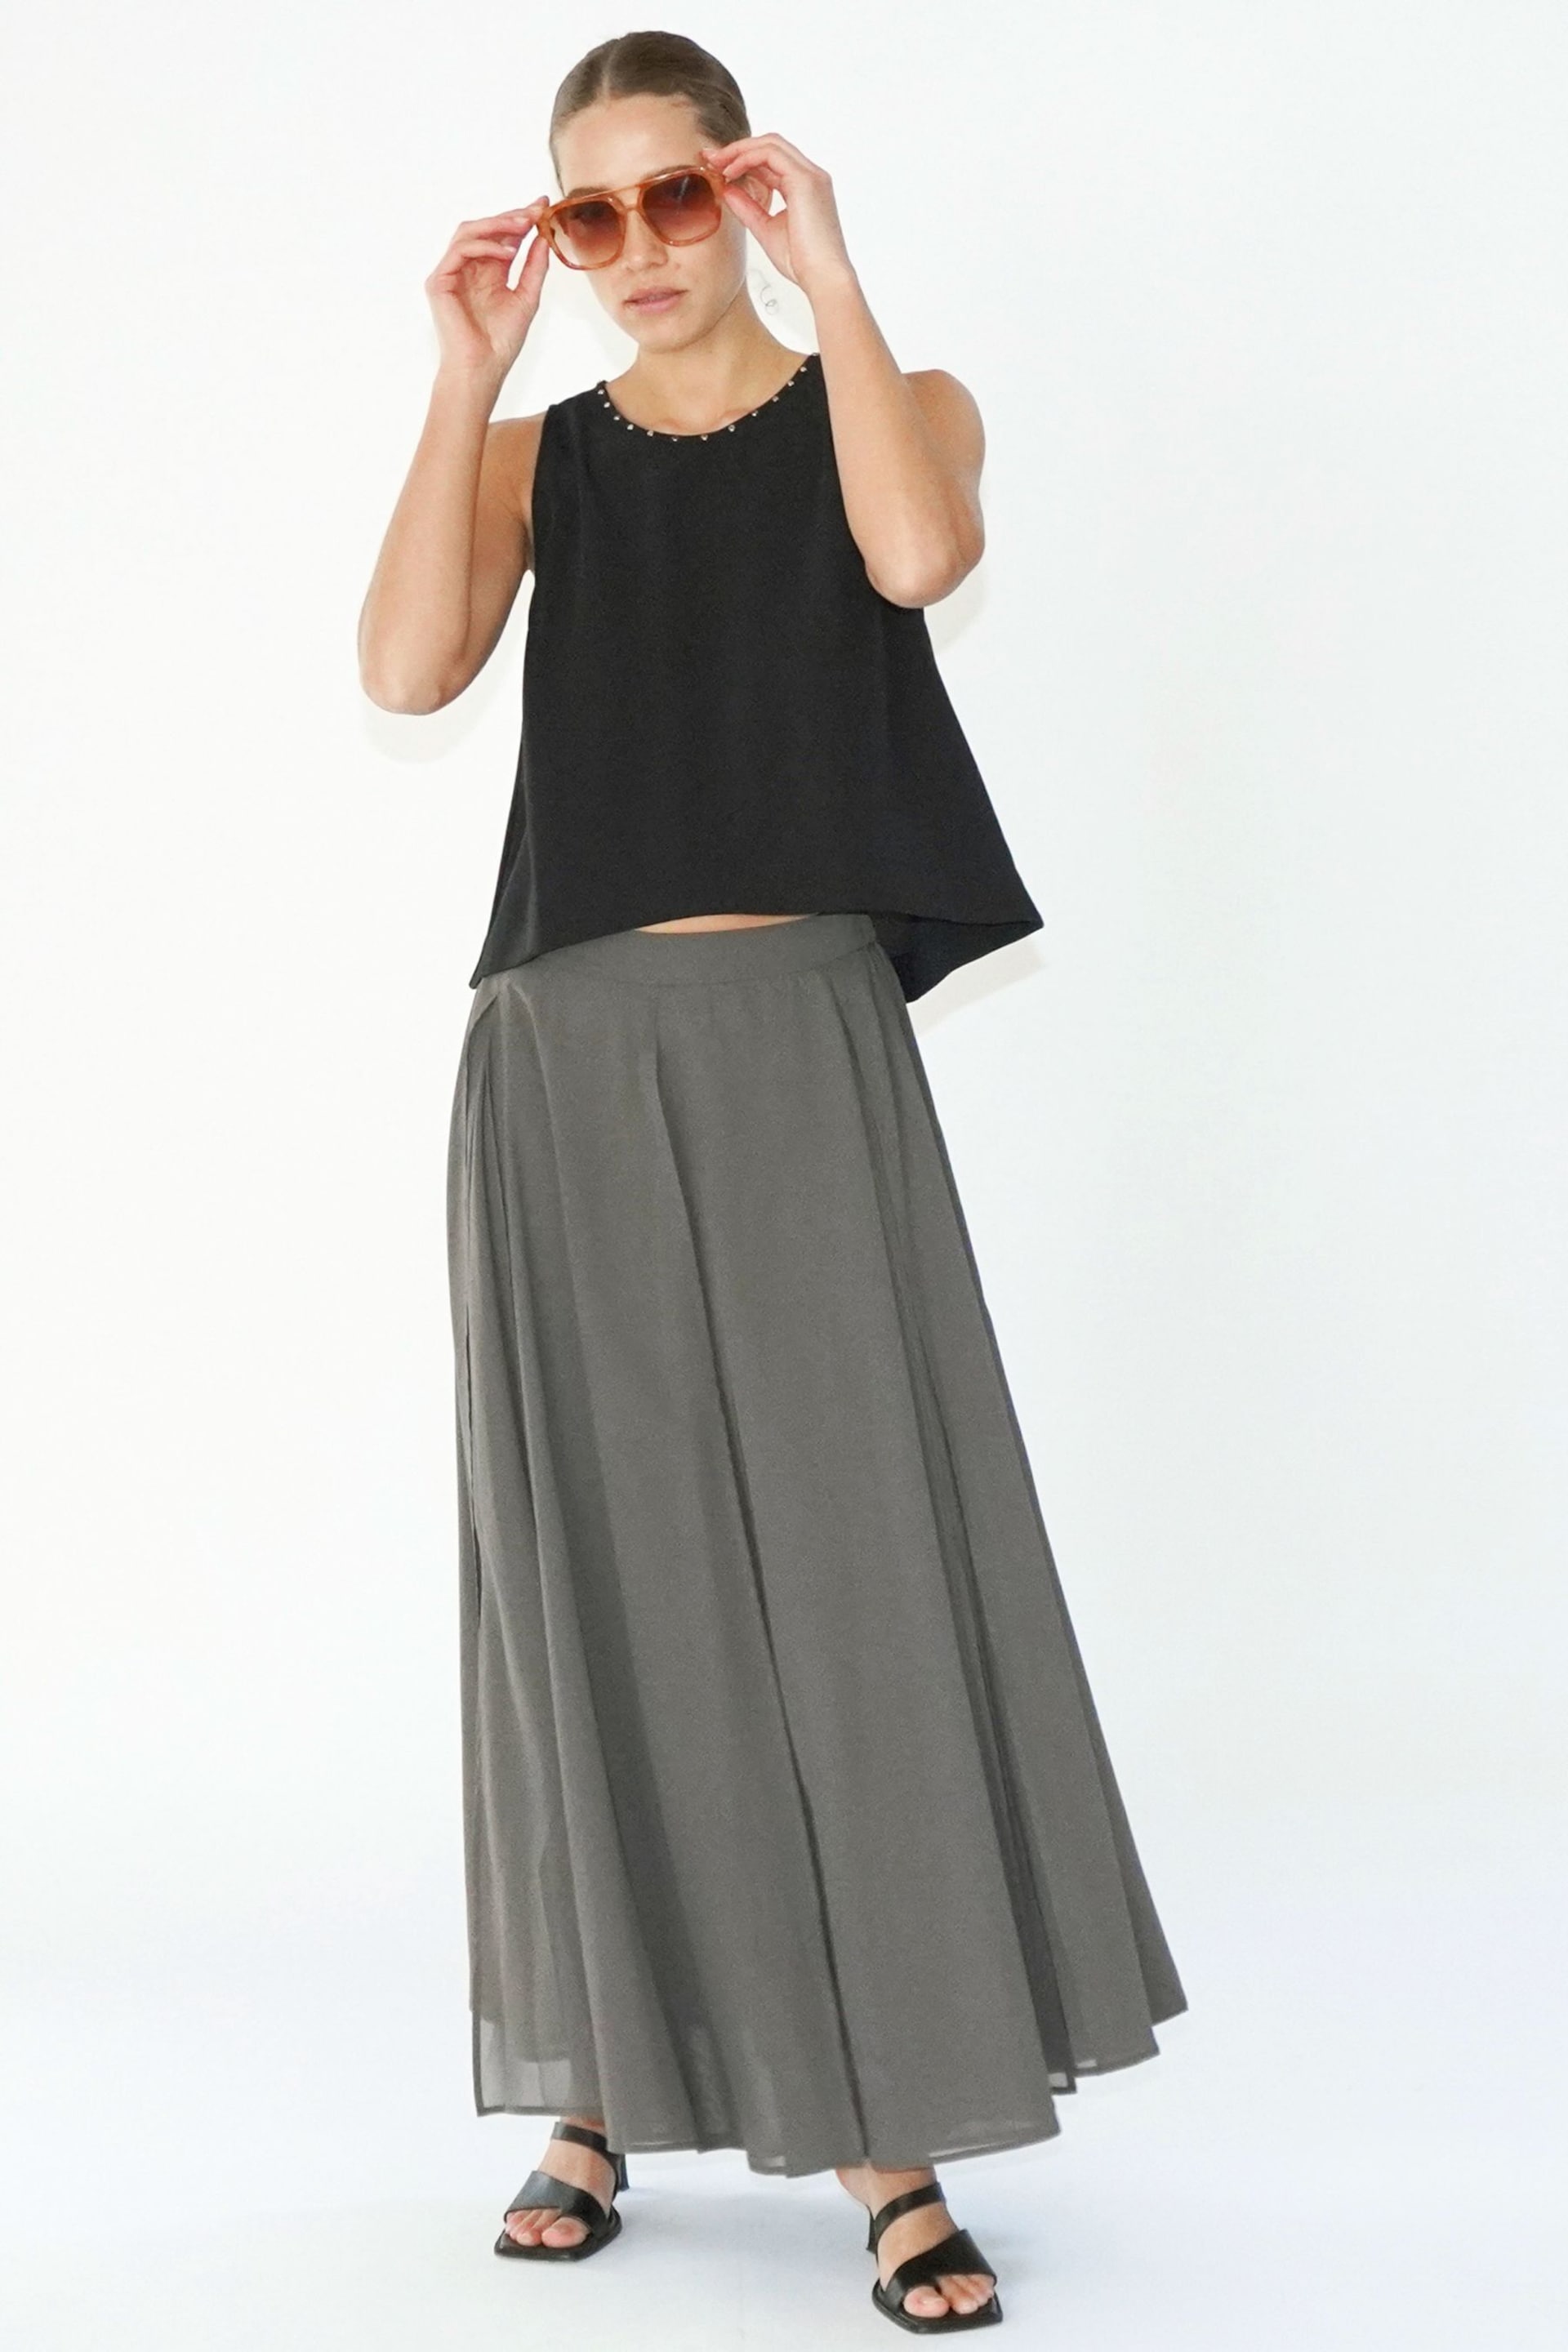 Religion Brown Eligion Floaty Sheer Multi Layered Olsen Maxi Skirt - Image 5 of 6